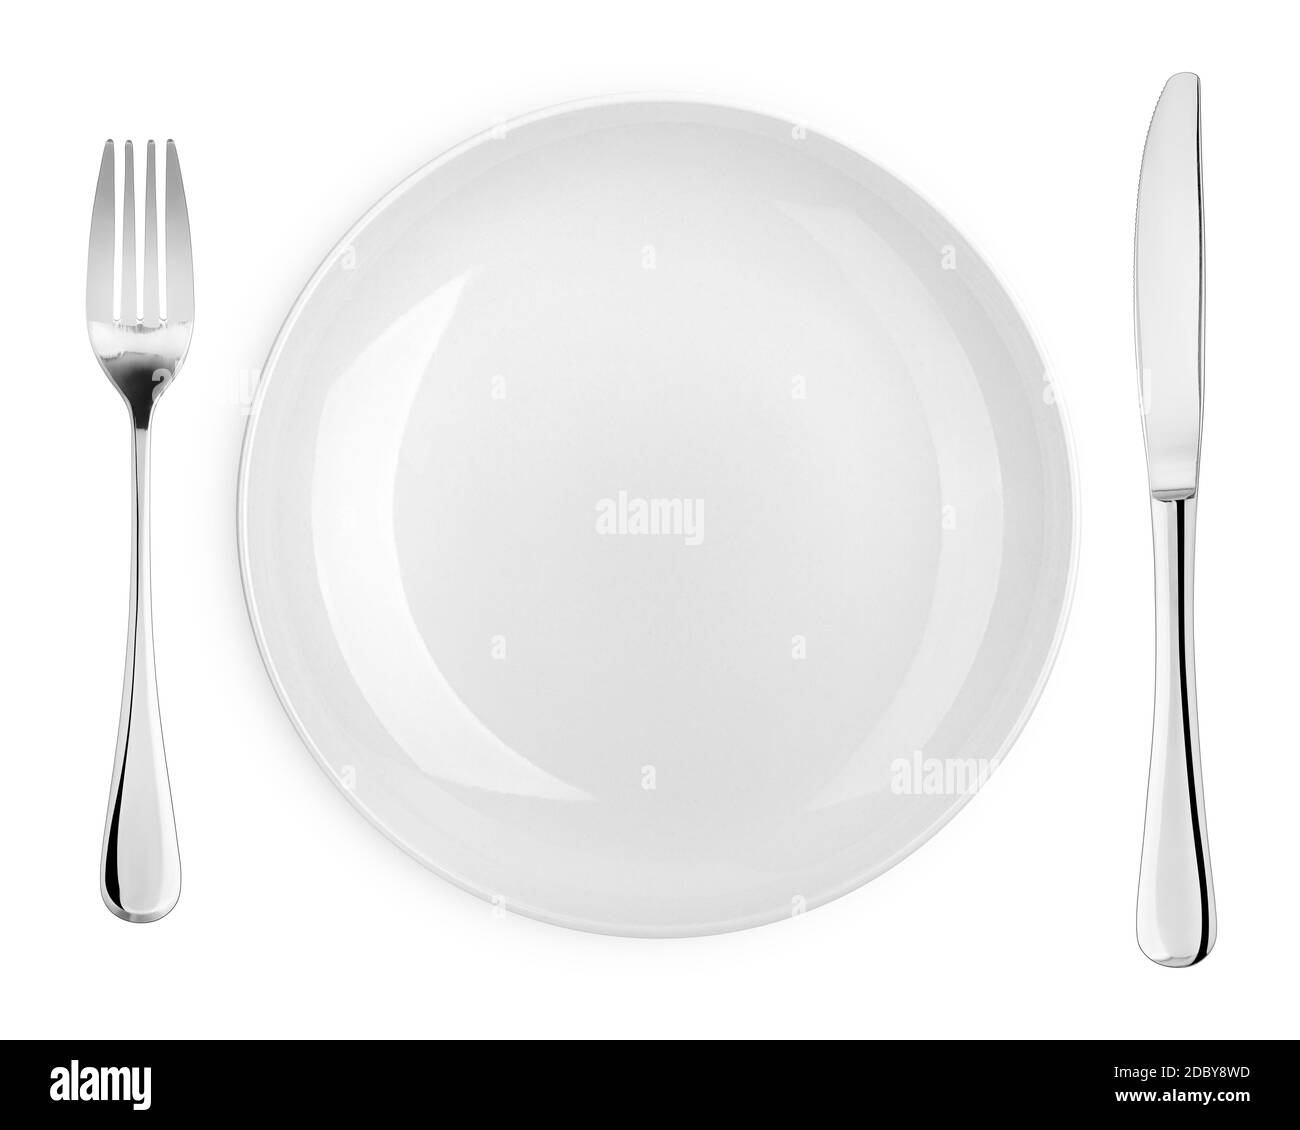 Piastra vuota, forchetta, coltello, posate isolate su sfondo bianco, percorso di ritaglio, vista dall'alto Foto Stock